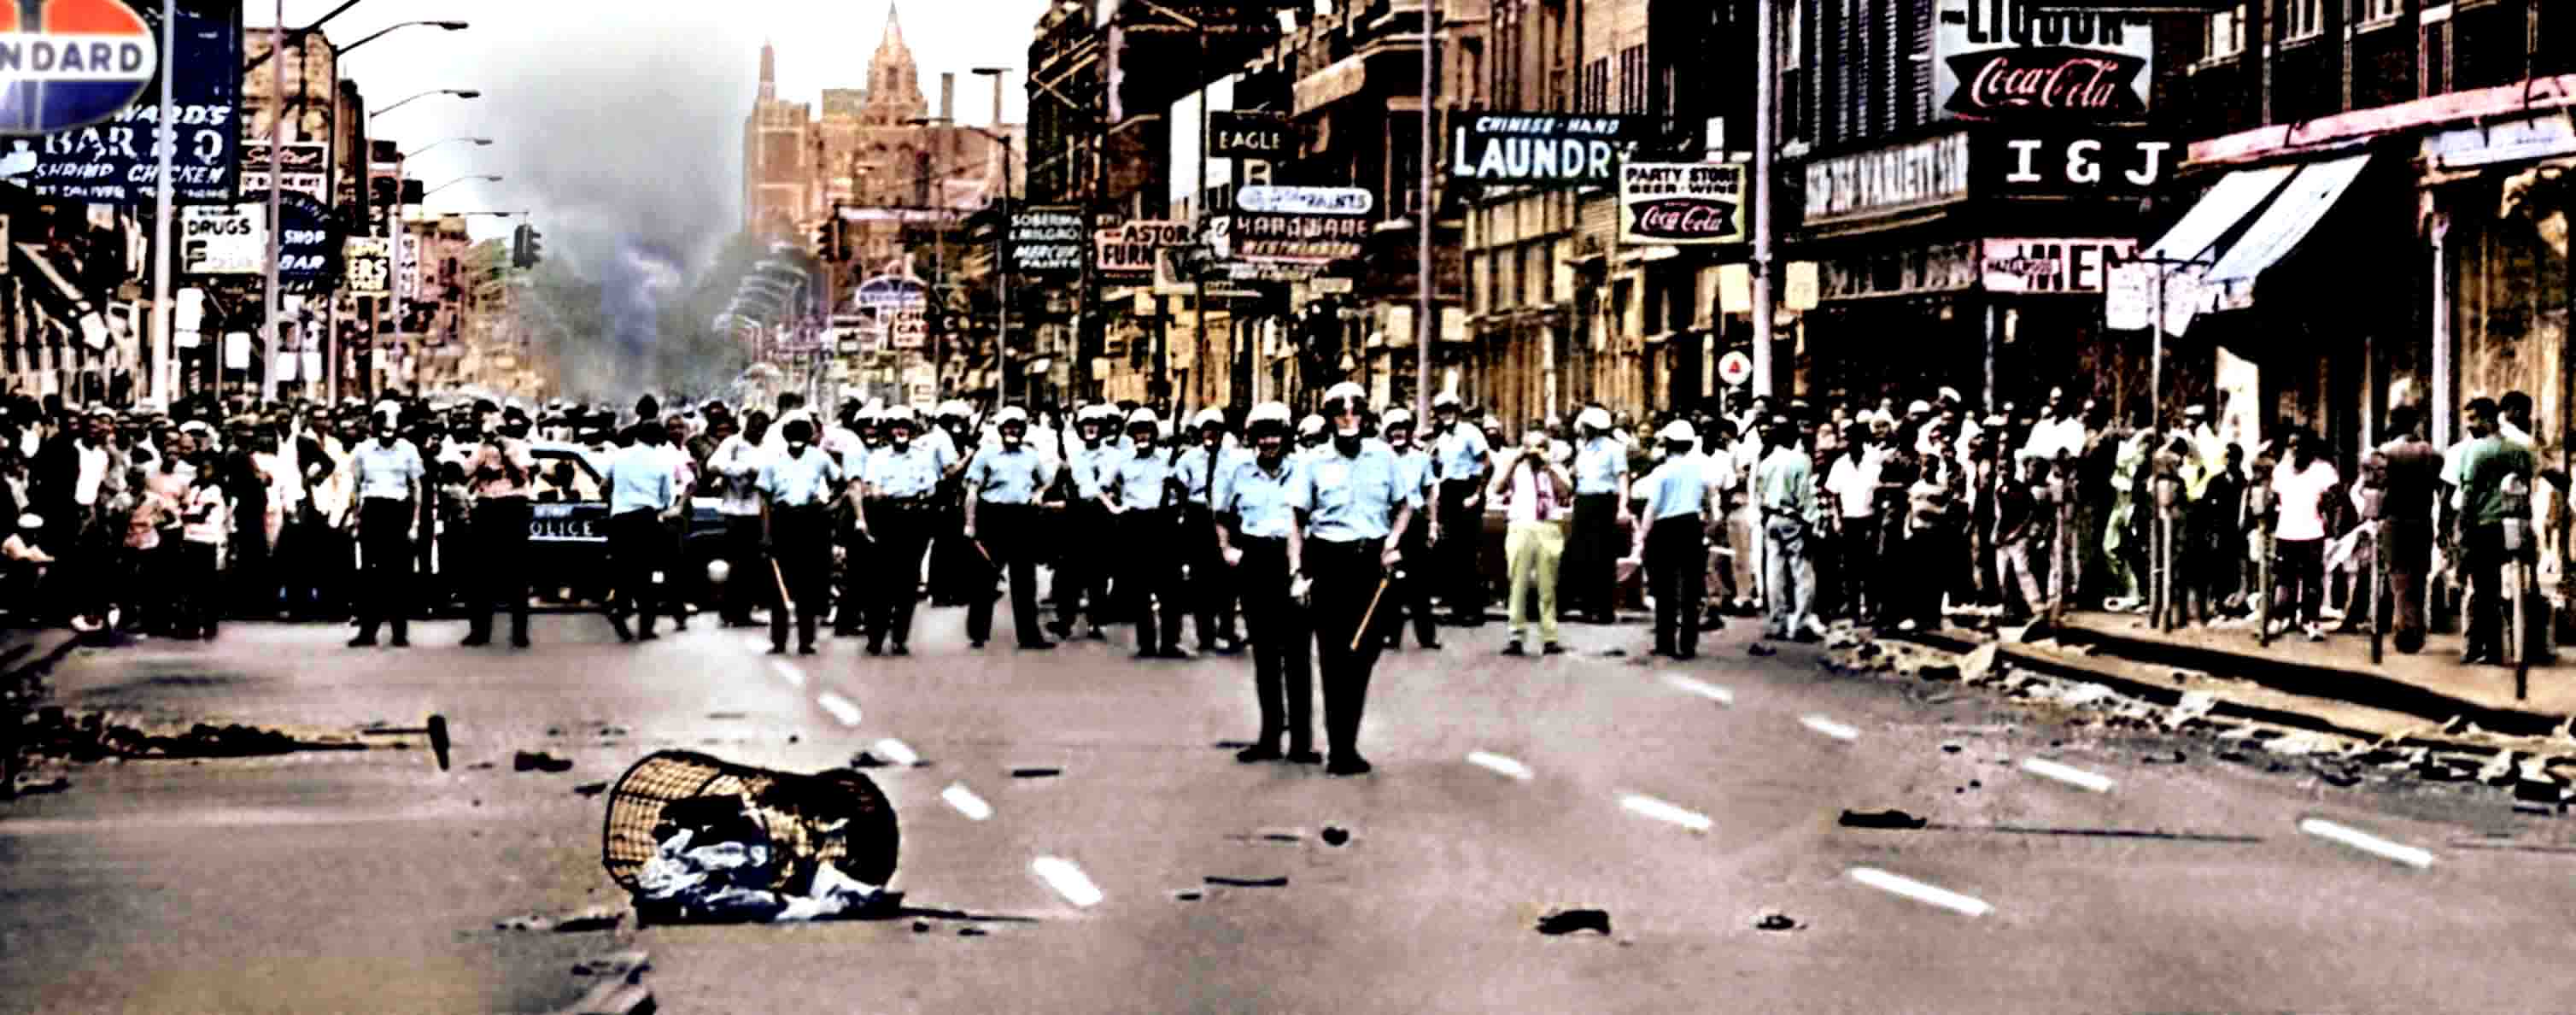 массовые беспорядки, полиция, Детройт - обои на рабочий стол